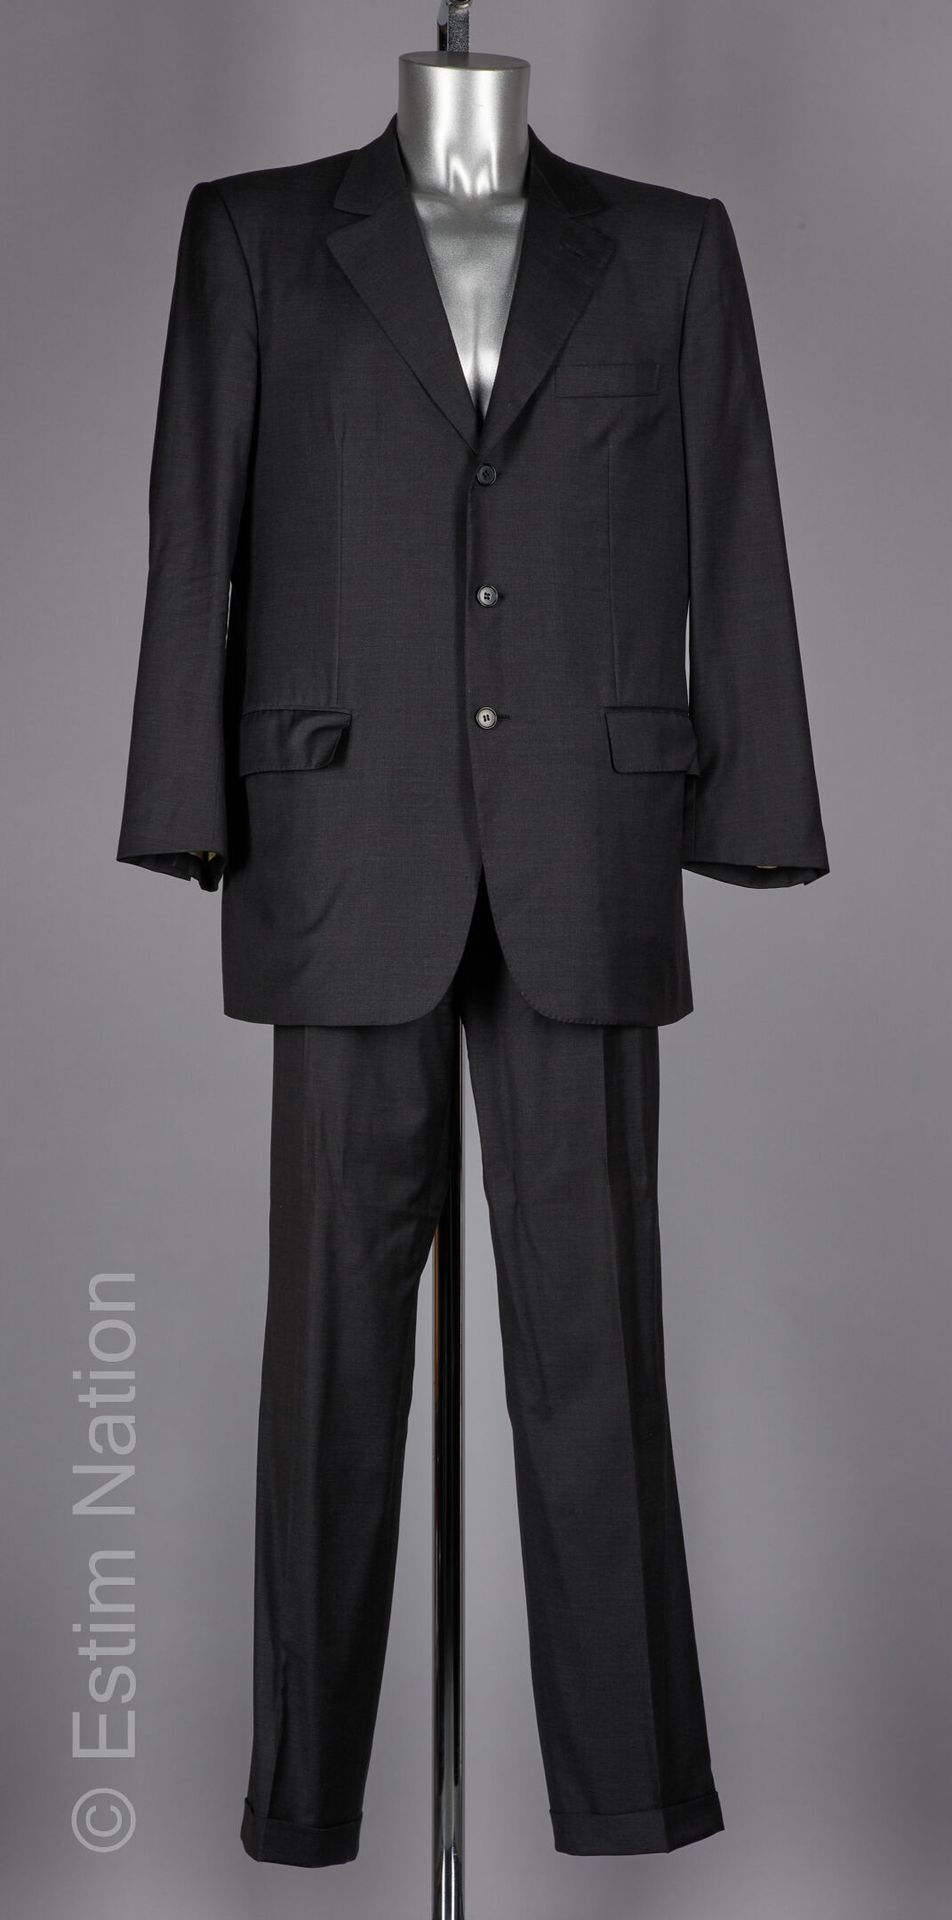 LANVIN COUTURE COSTUME en laine super 160's anthracite : veste à trois poches, p&hellip;